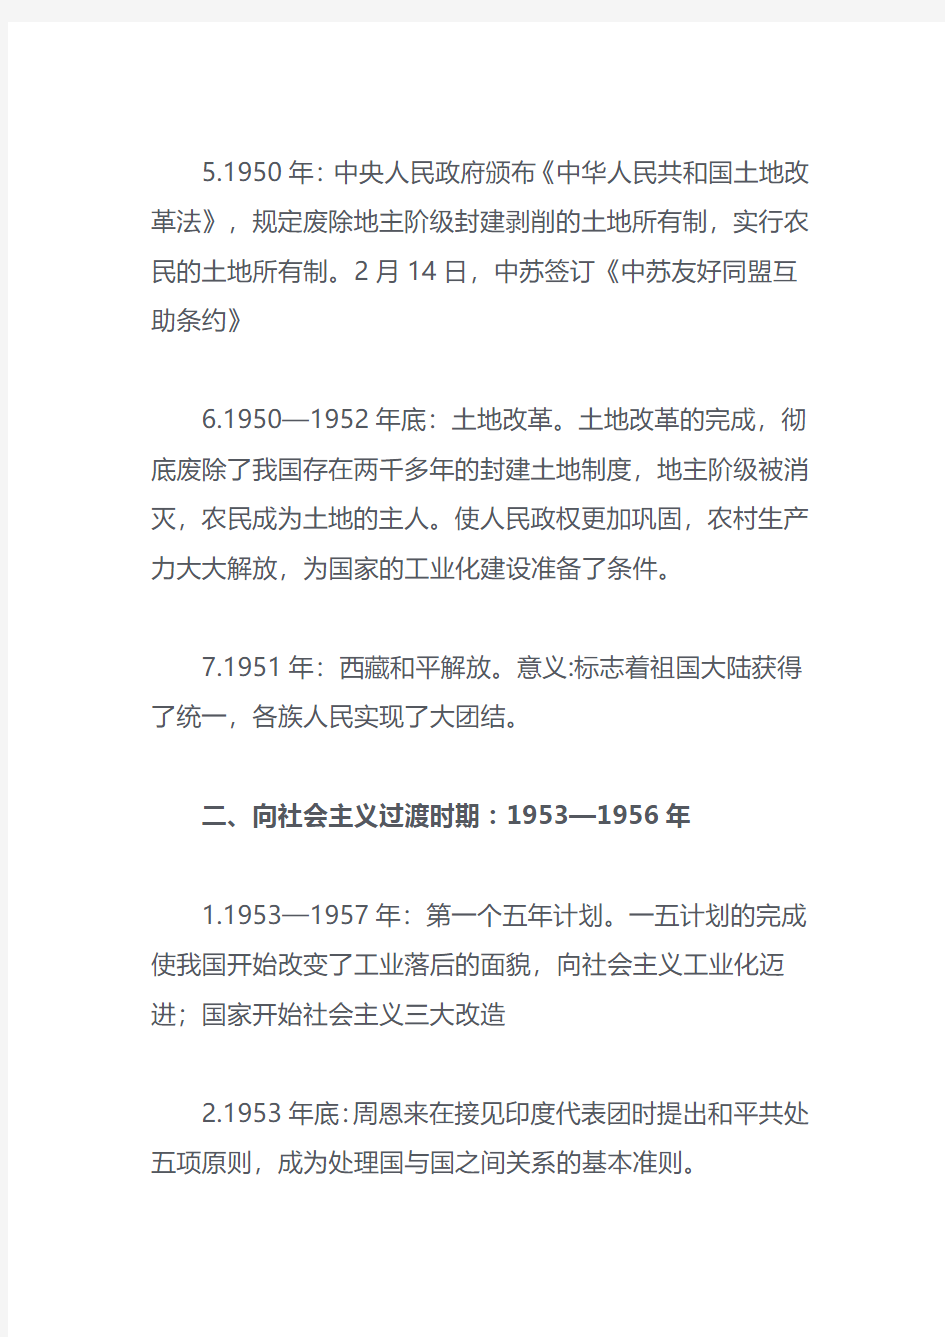 高三复习中国现代史大事年表完整版